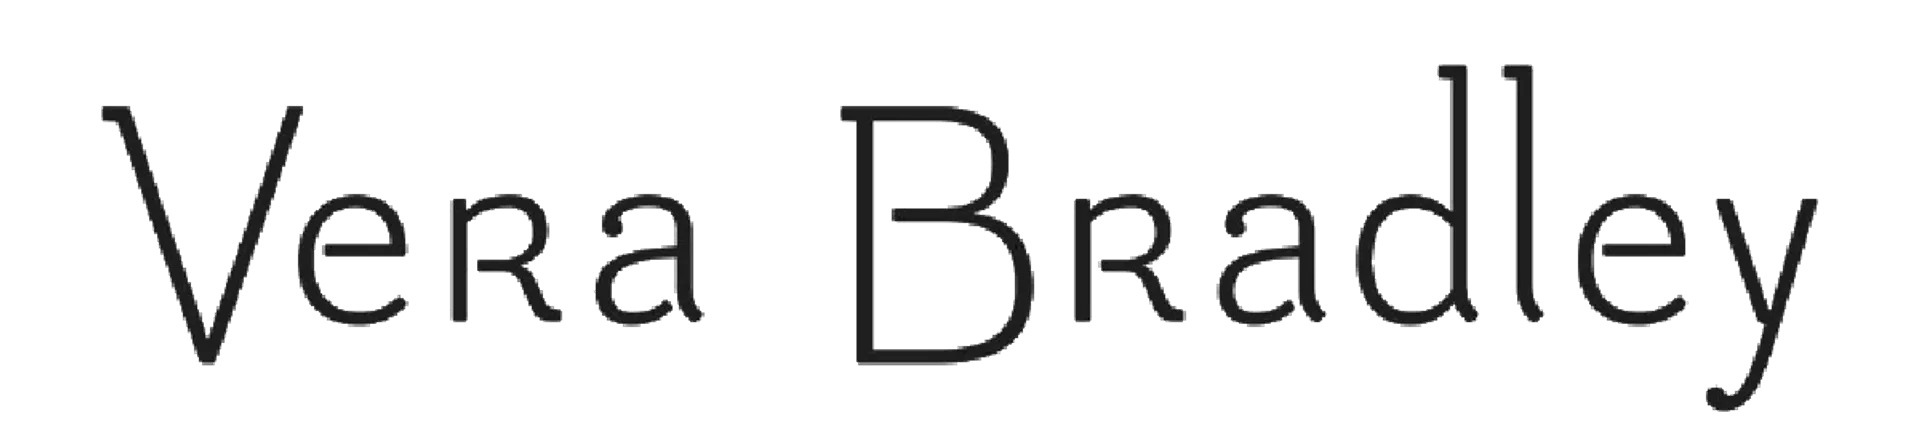 VERA BRADLEY logo